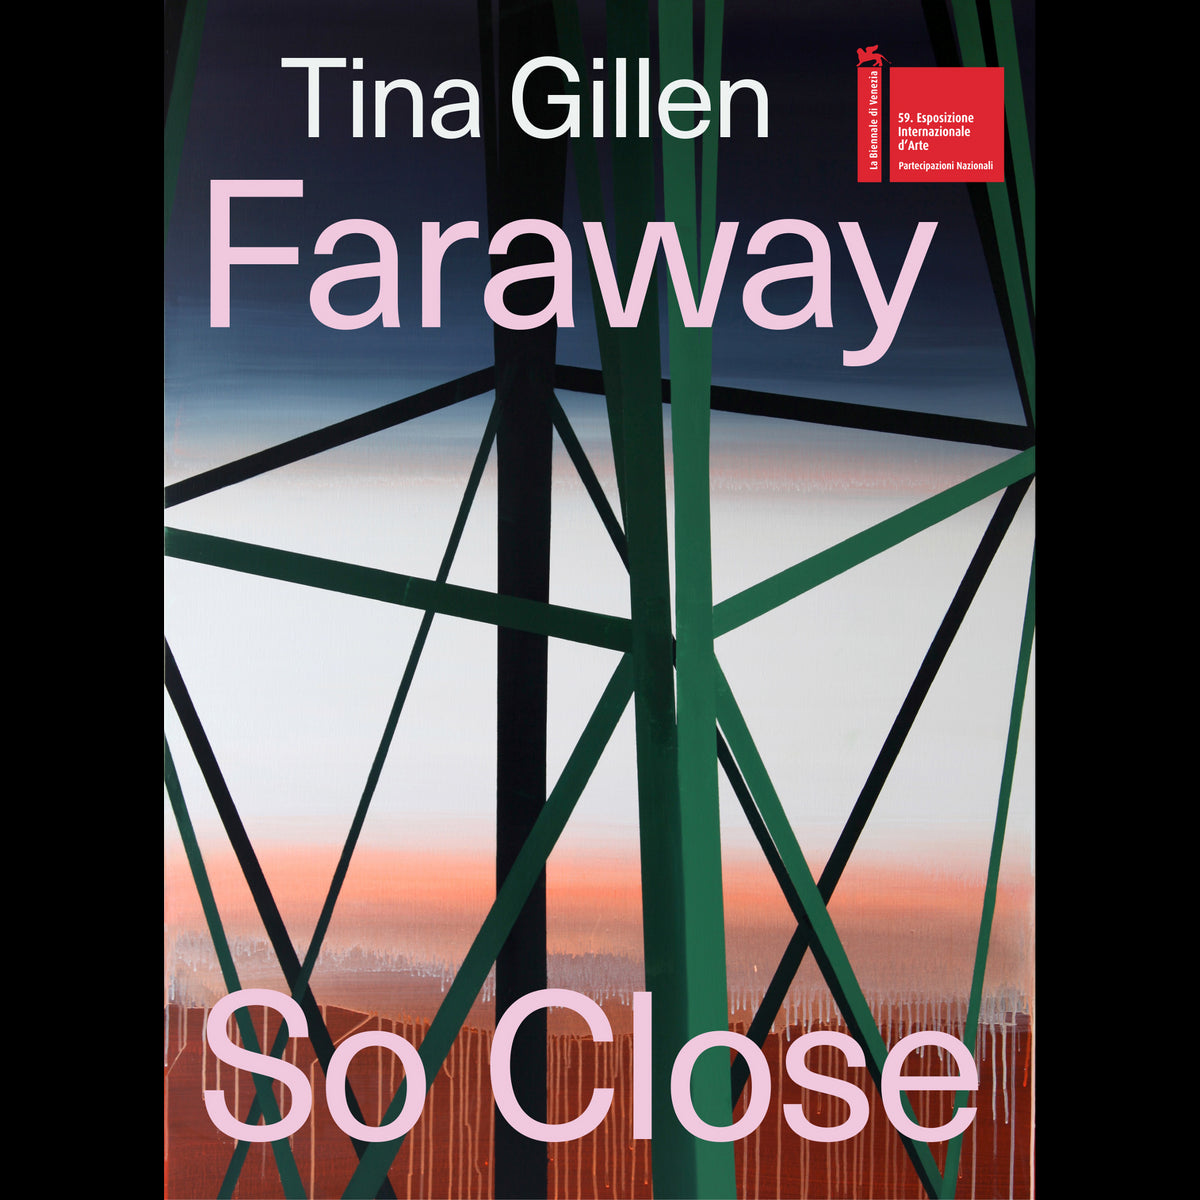 Coverbild Tina Gillen. Faraway So Close